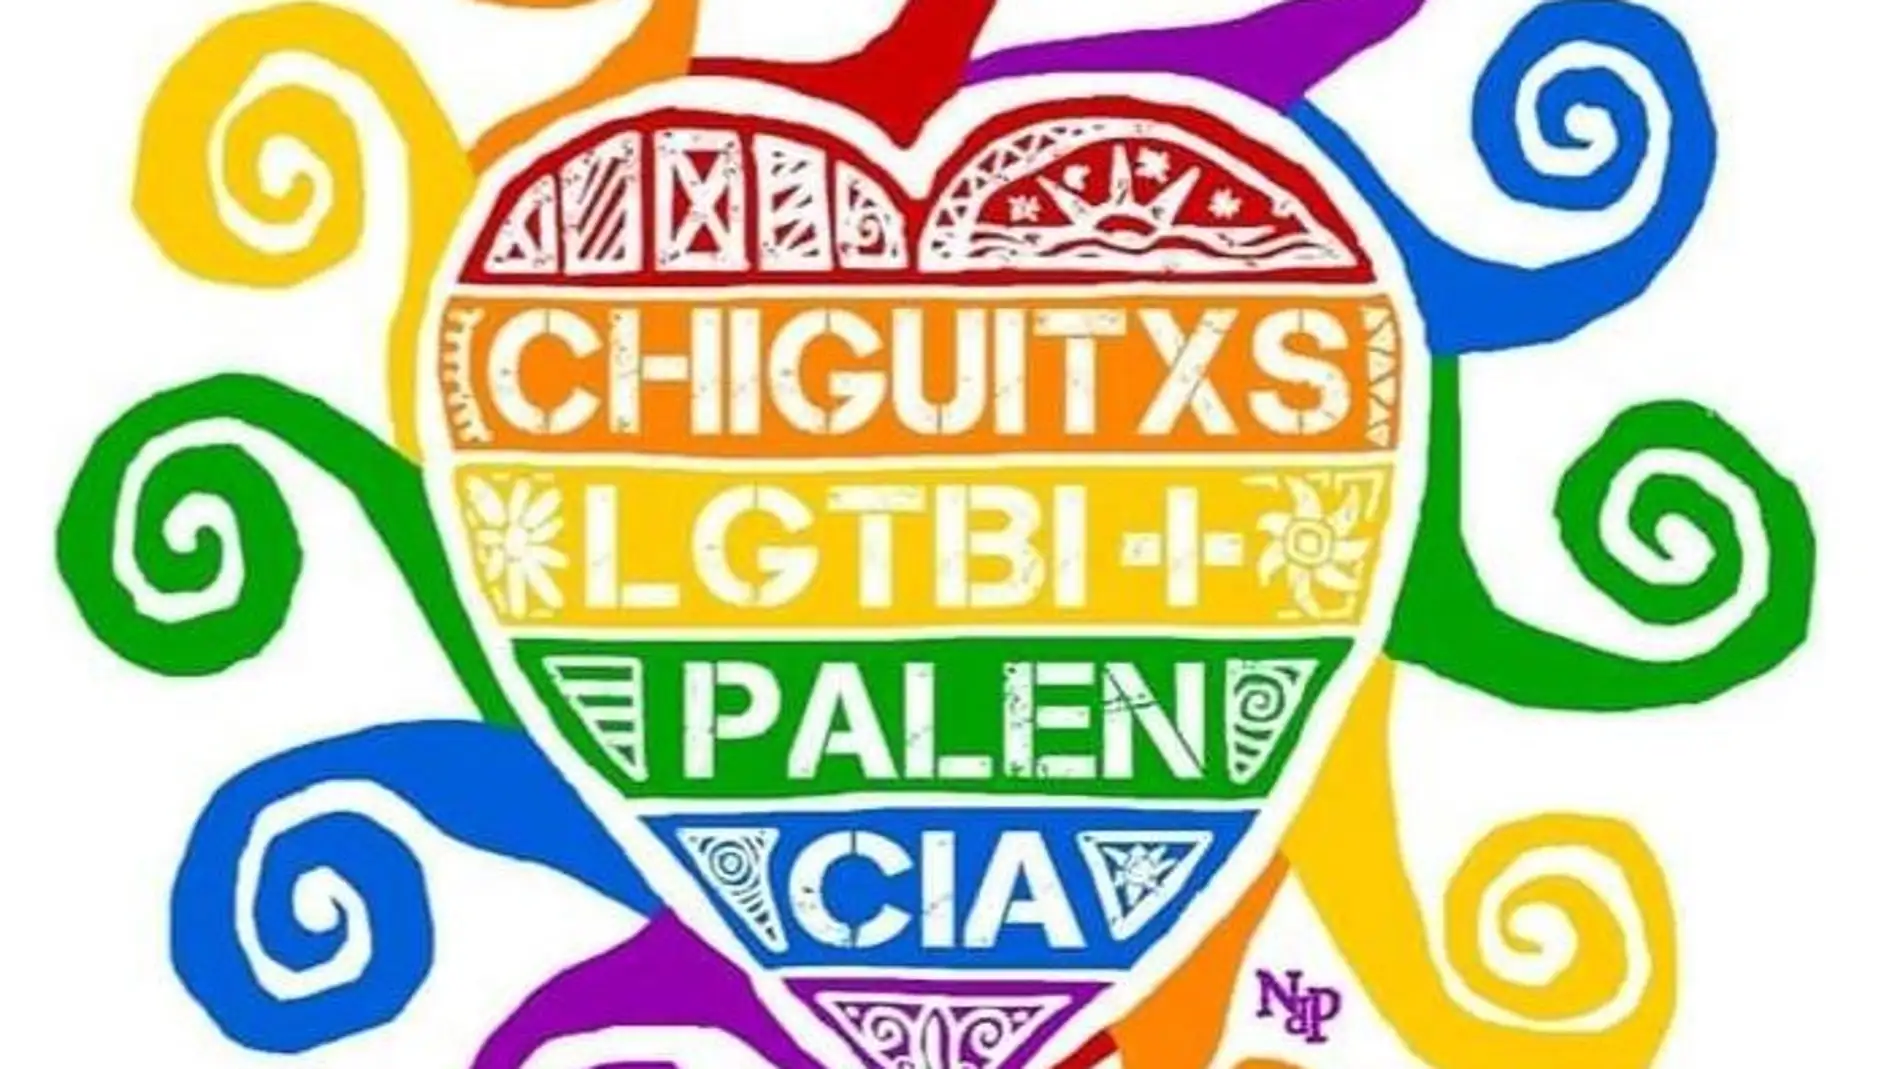 Aclaración de Chiguitxs LGTB+ sobre agresión lgtbfóbica